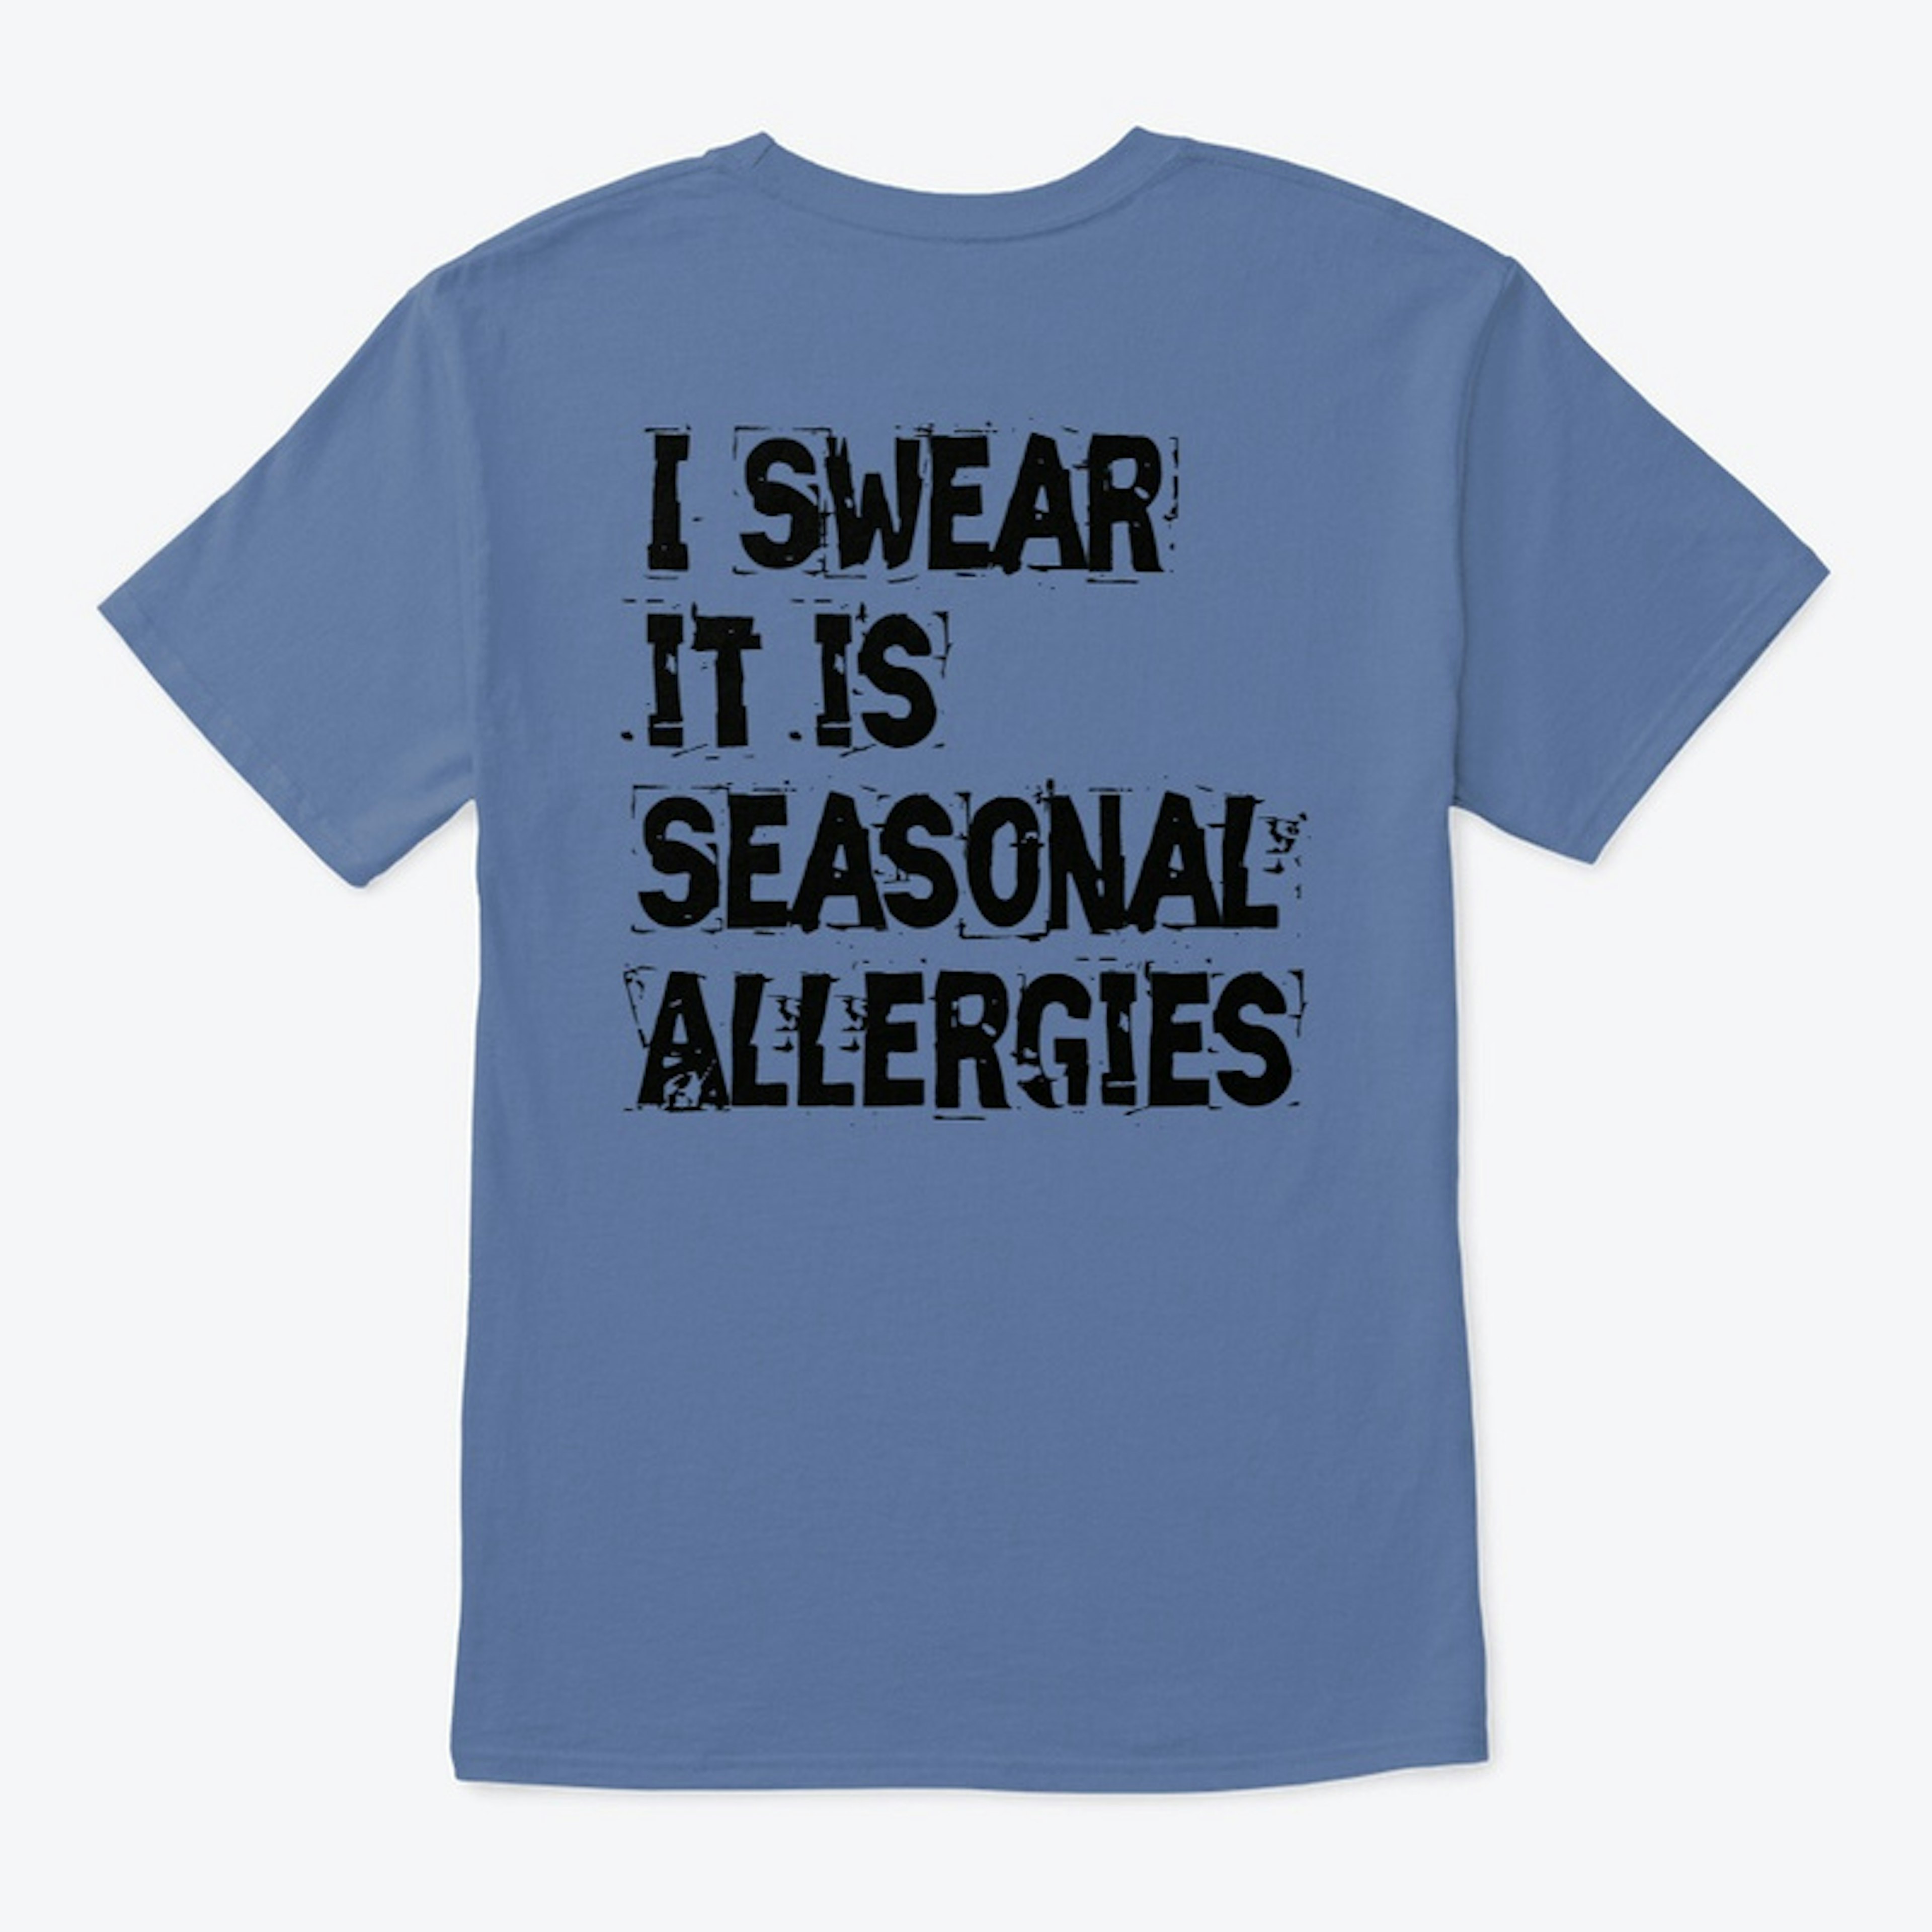 It is Allergies